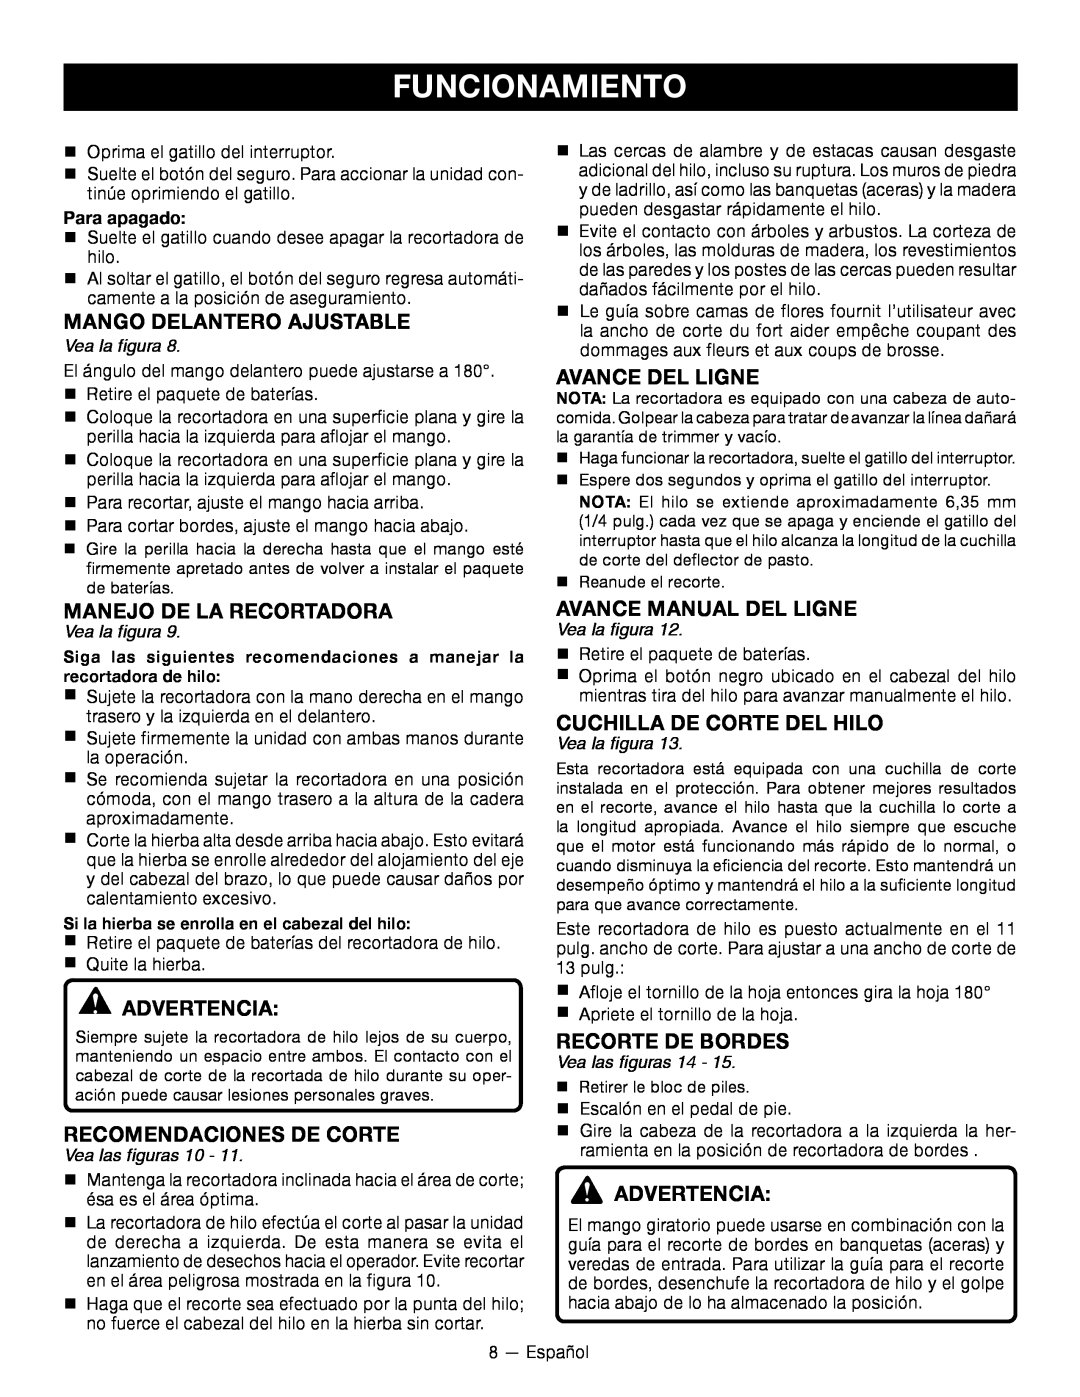 Ryobi RY24200 Manejo De La Recortadora, Recomendaciones De Corte, AVANCE DEL ligne, AVANCE MANUAL DEL ligne, Para apagado 